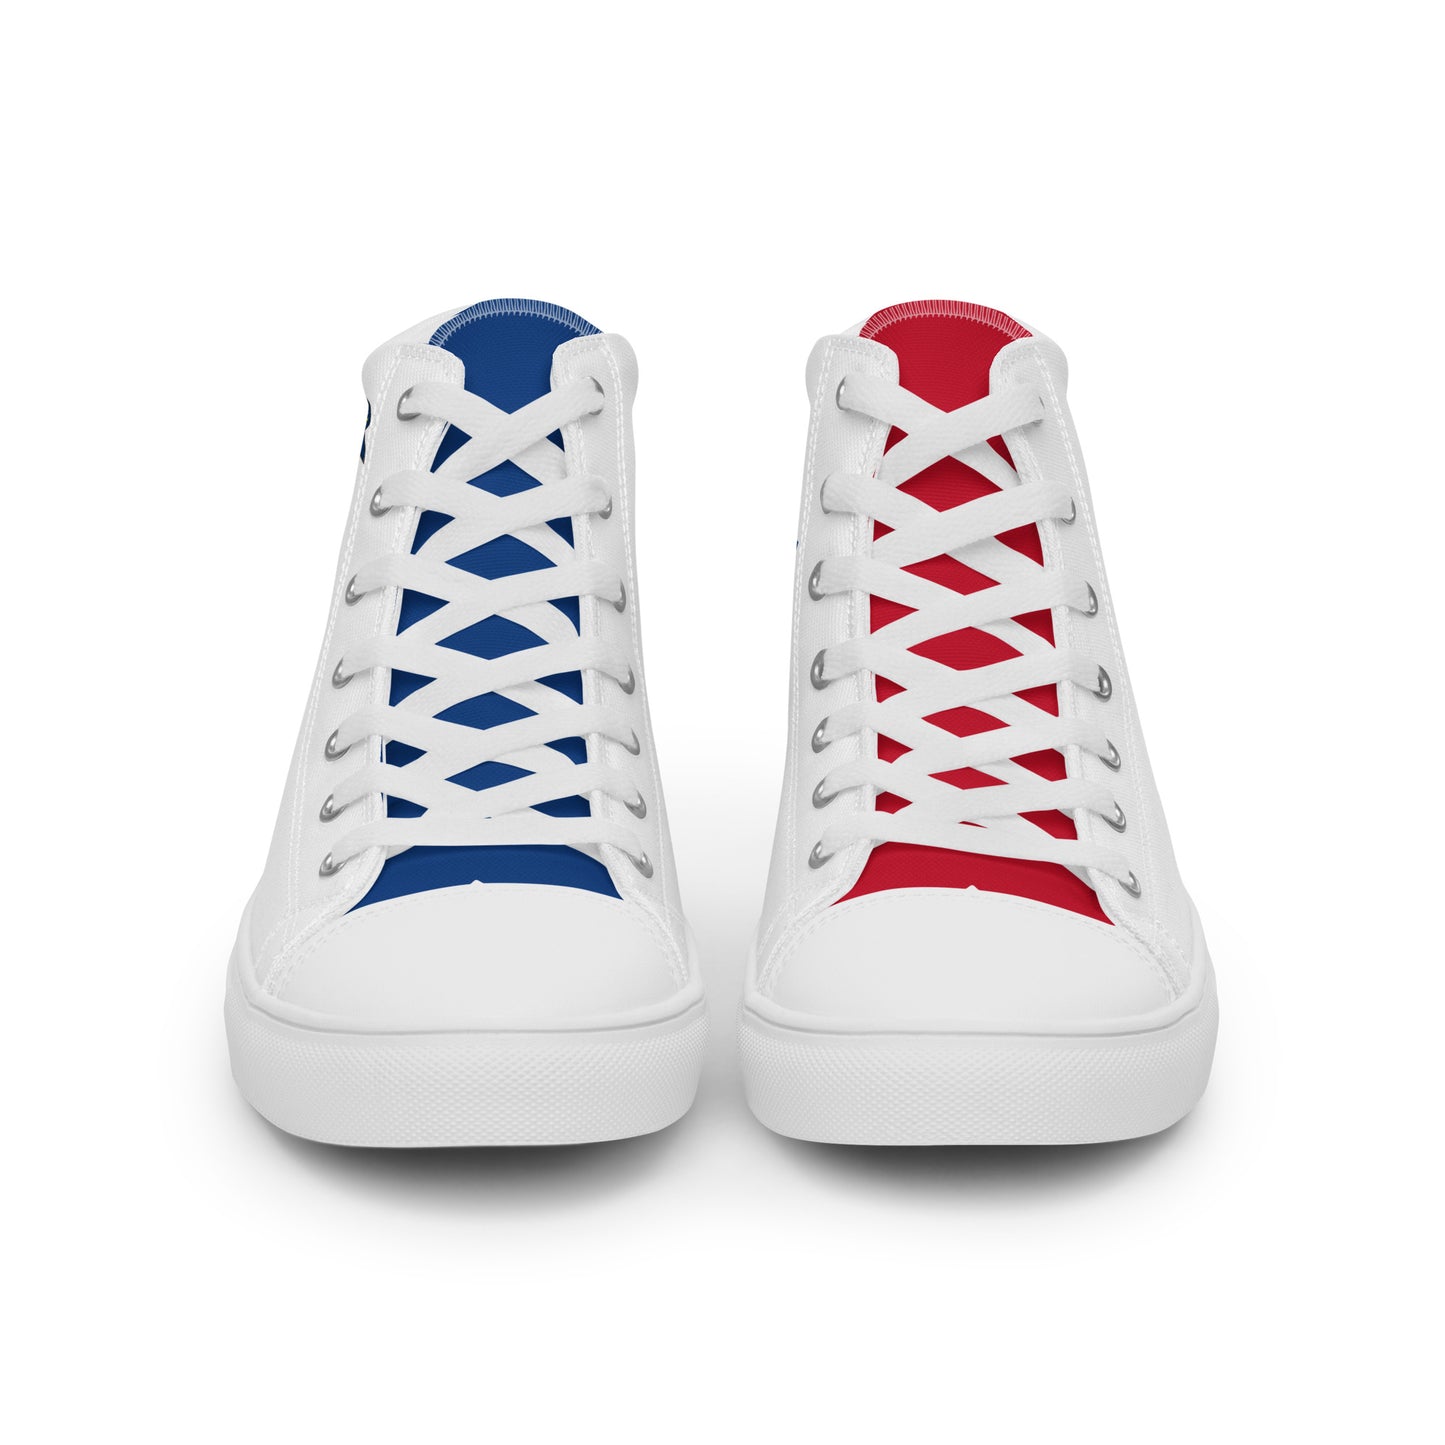 República Dominicana - Men - White - High top shoes